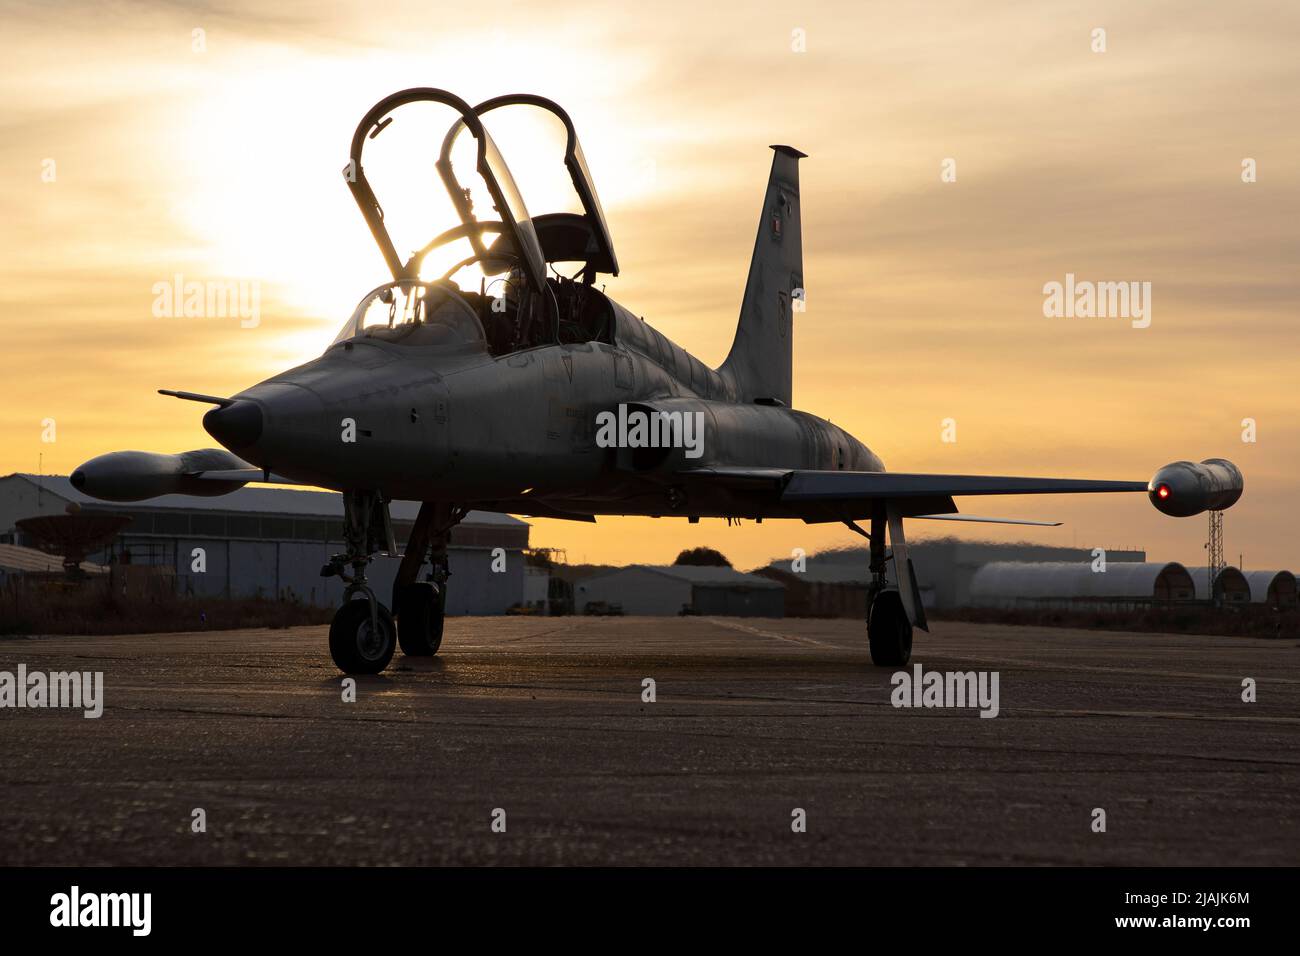 Un avion d'entraînement SF-5M Freedom Fighter de la Force aérienne espagnole sur le tarmac. Banque D'Images